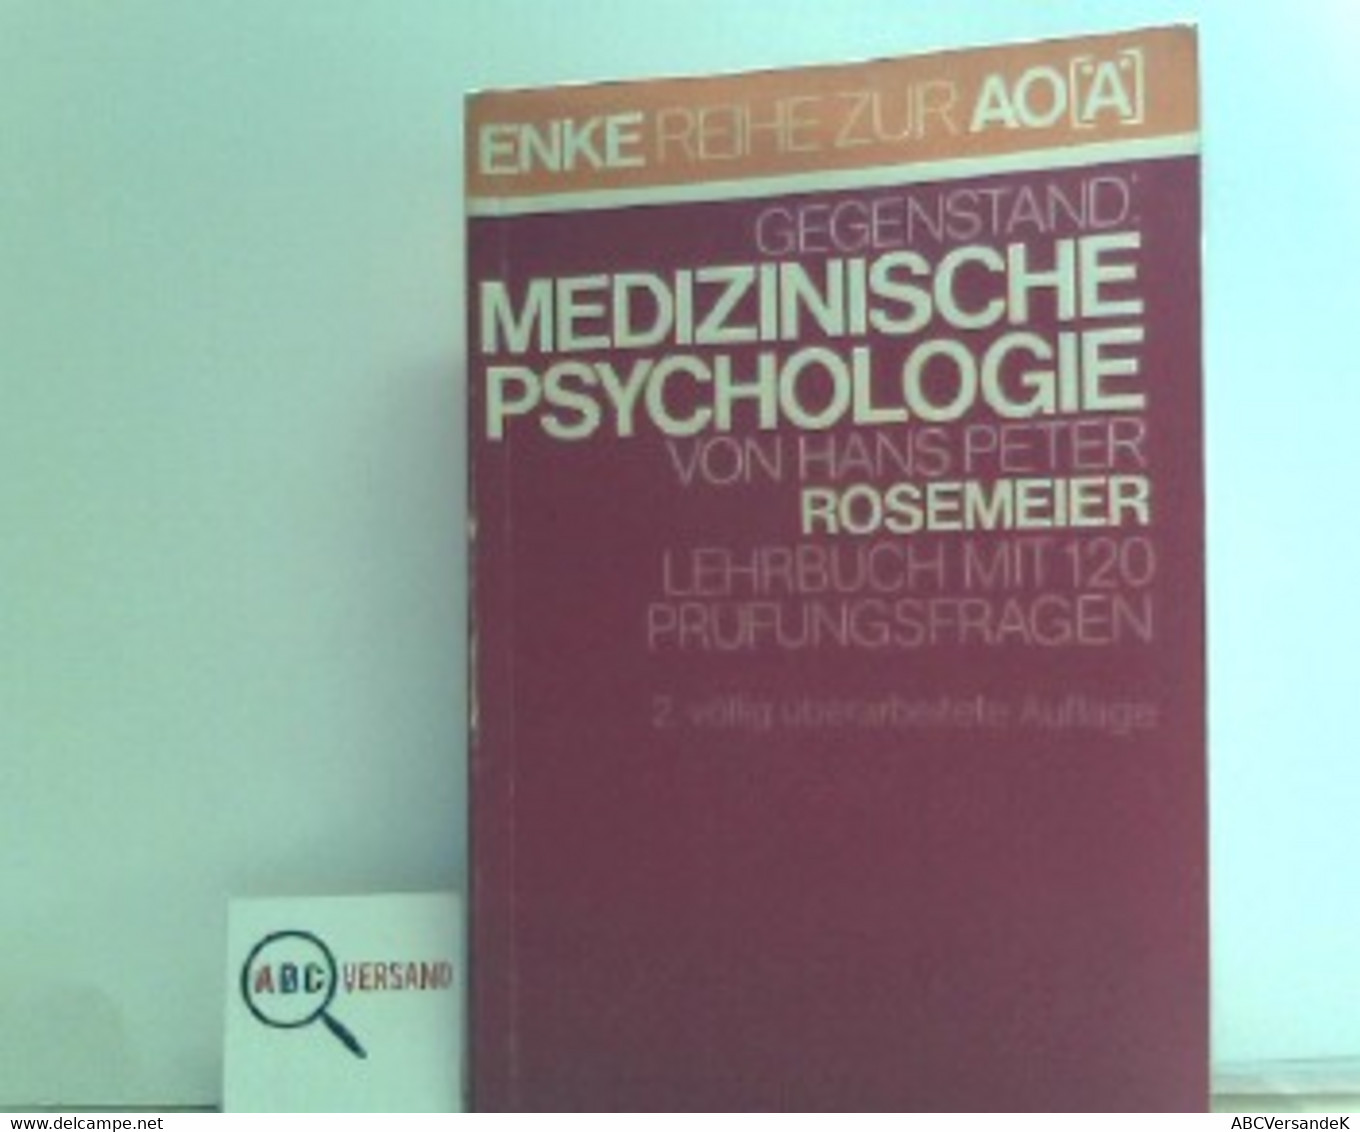 Medizinische Psychologie : Lehrbuch Mit 120 Prüfungsfragen,Hans Peter Rosemeier. Mit Beitr. Von Meinhard Adler - Psychology